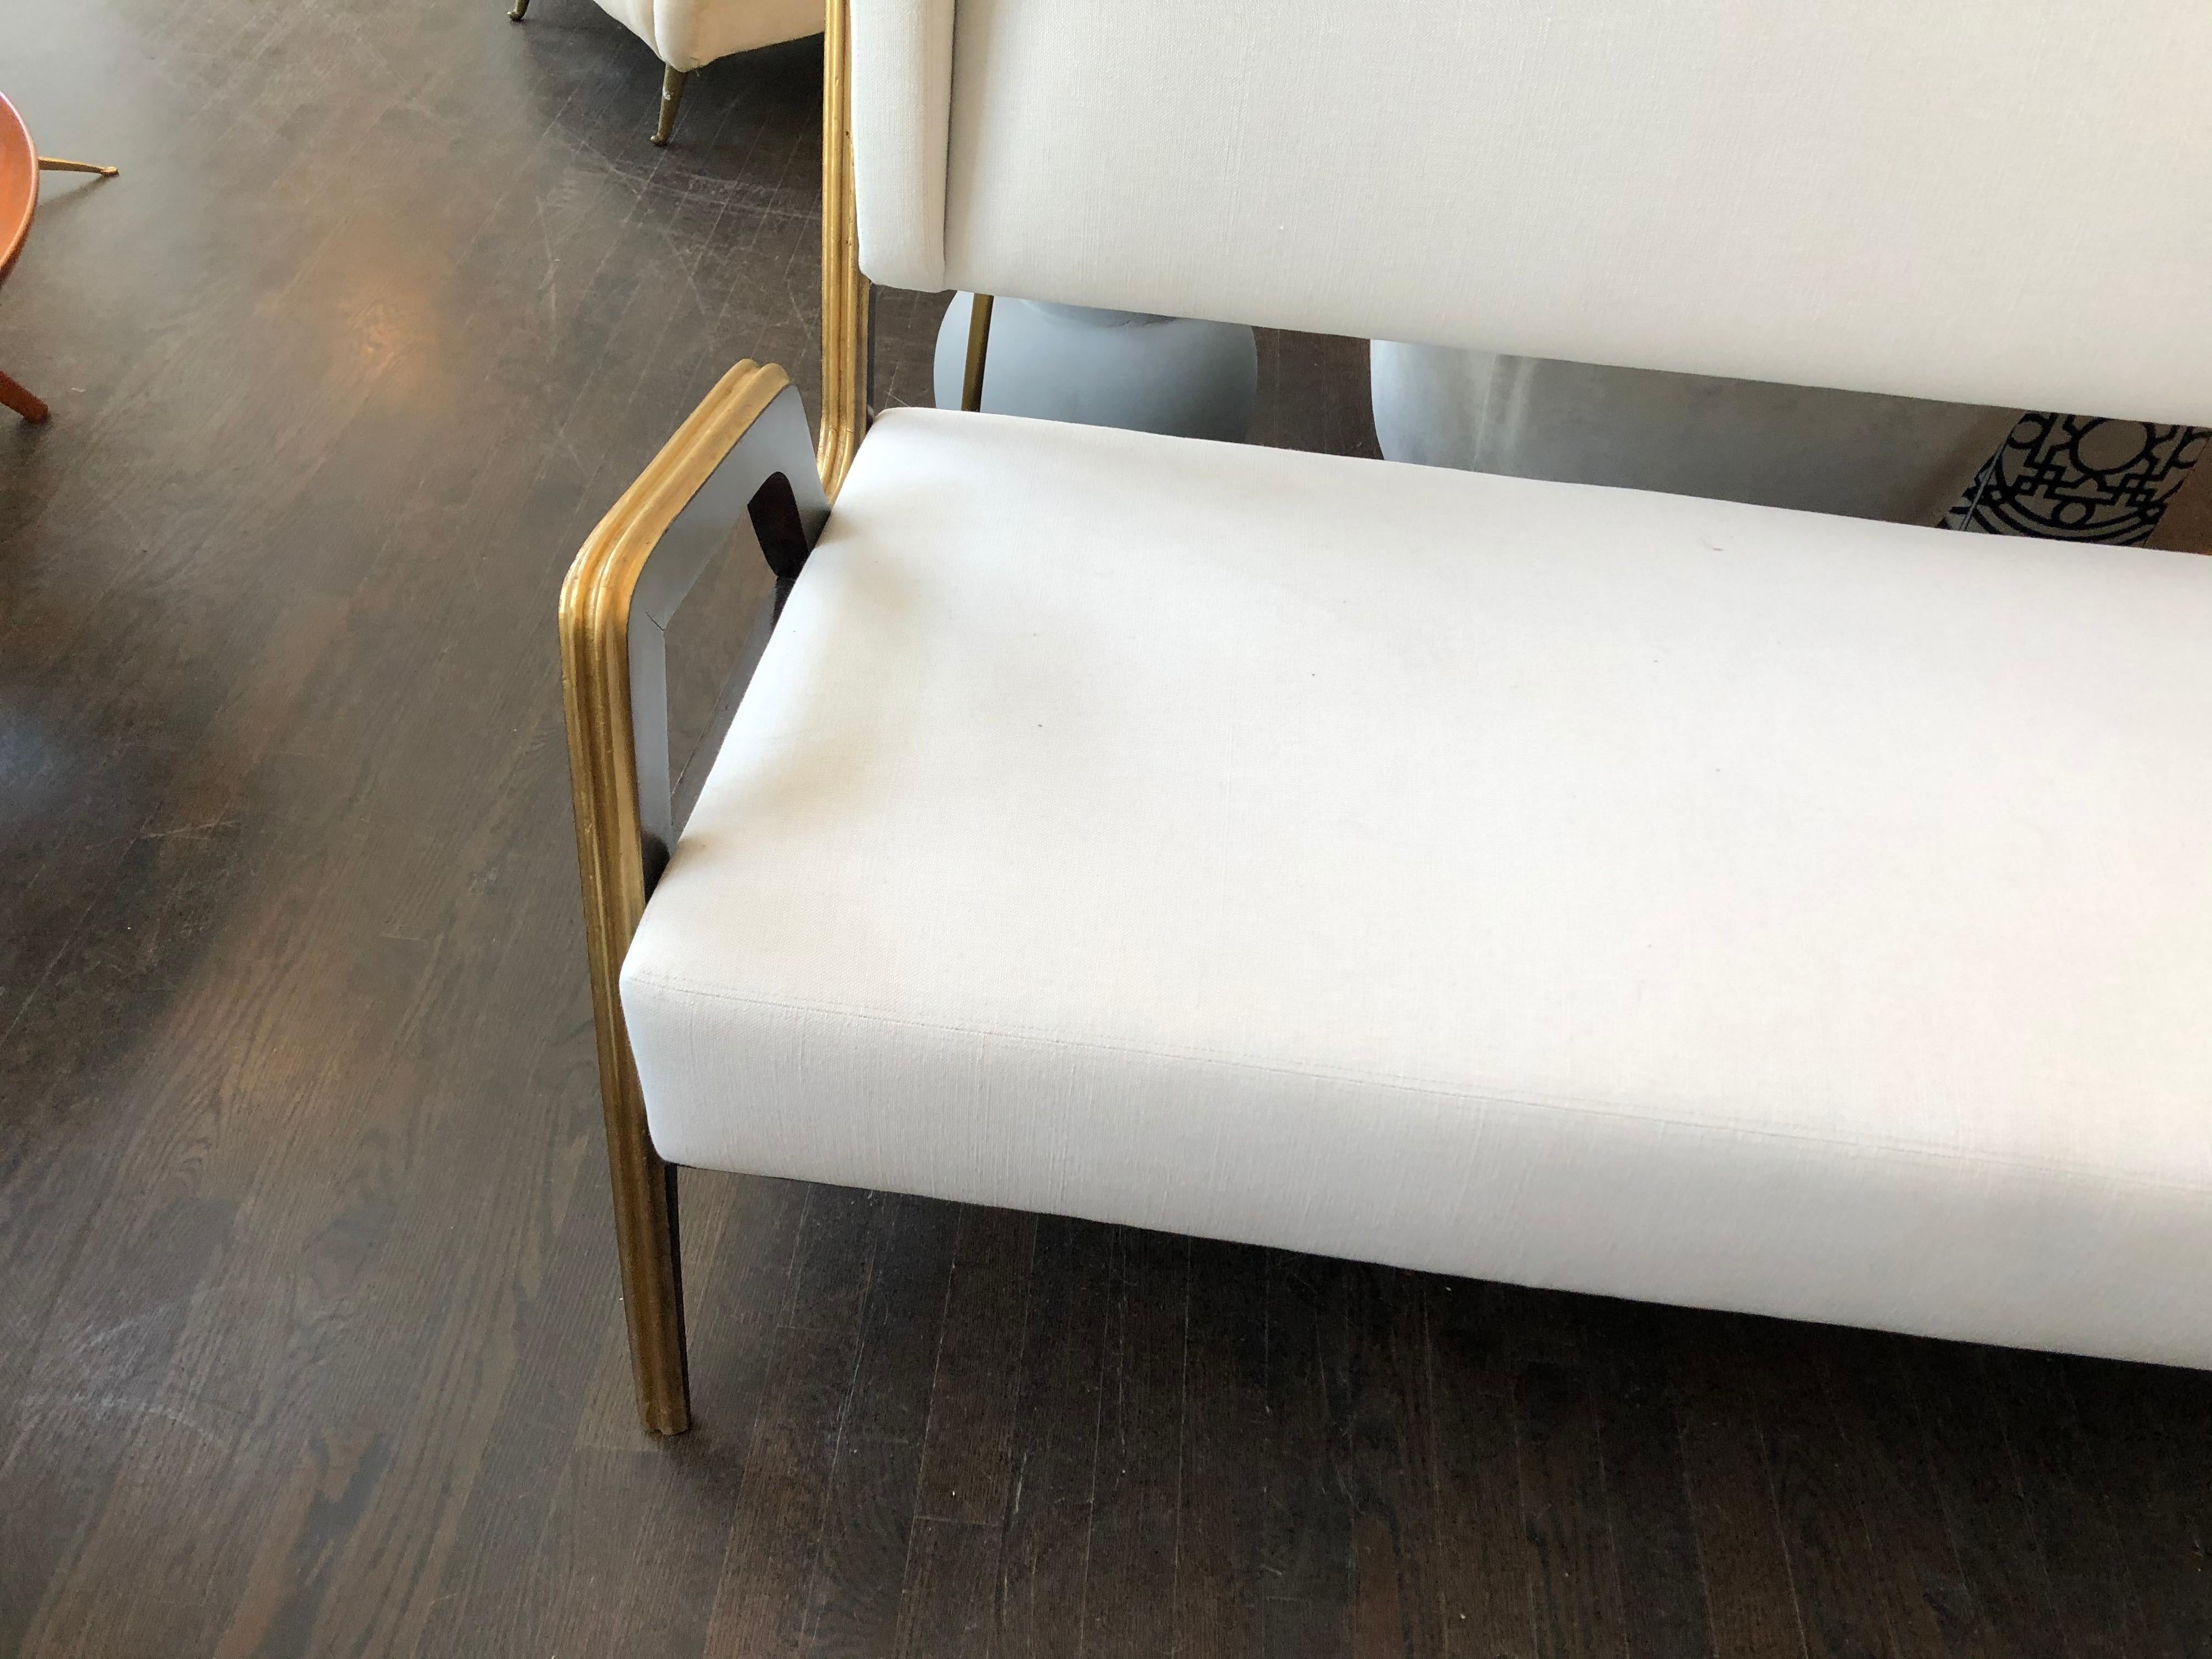 Dieses italienische Art-Déco-Sofa weist markante neoklassische Elemente auf, wie die kannelierten Schnitzereien an den Arm- und Beinteilen und die Verwendung von klassischem schwarzem Lack mit goldenen Highlights auf den Holzoberflächen. Mit seinen